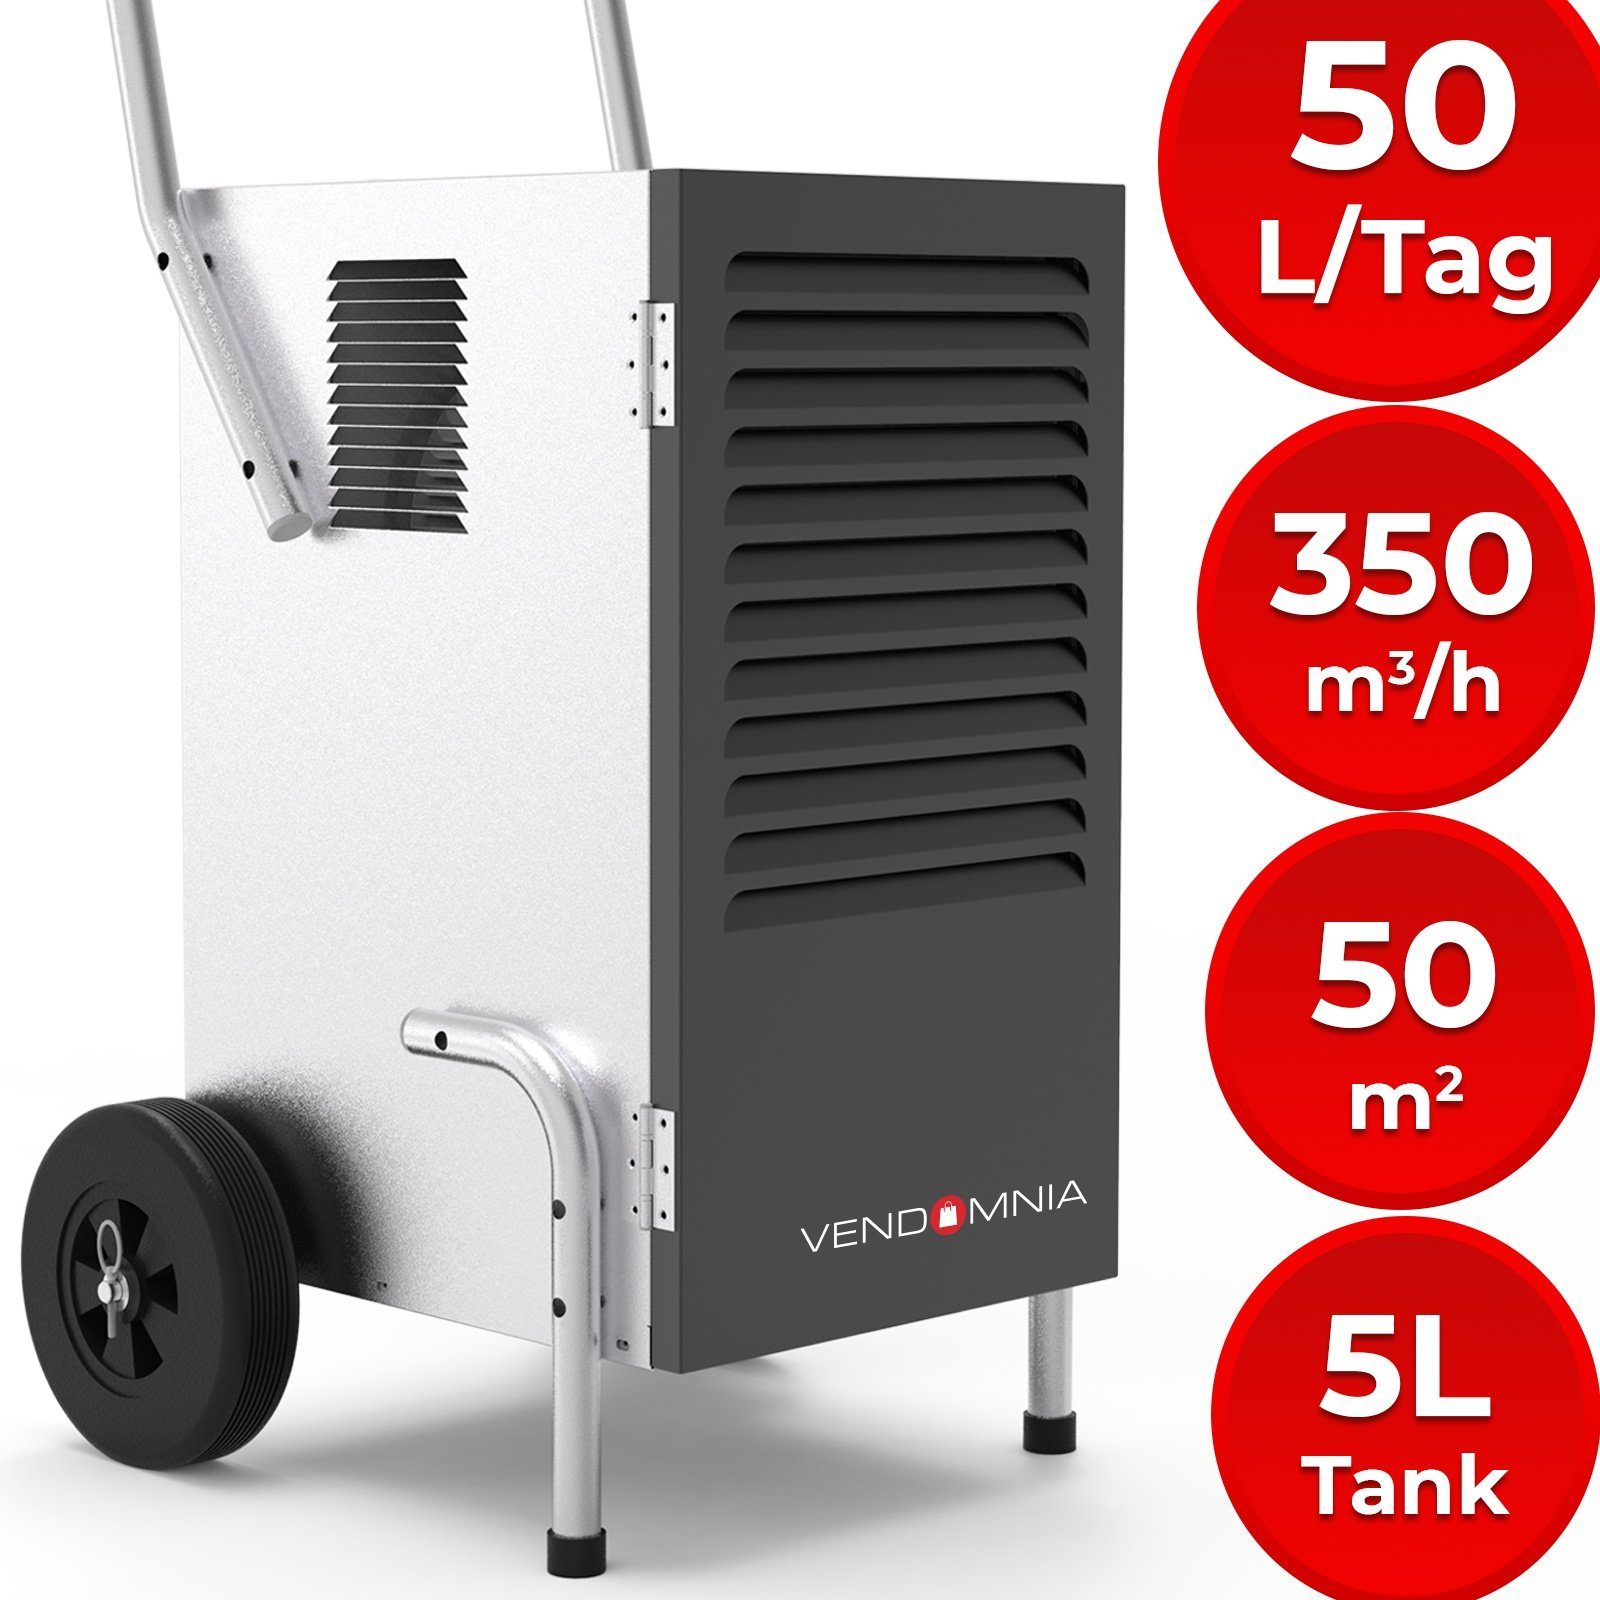 VENDOMNIA Luftreiniger Luftentfeuchter - 50 L / Tag, 5,5 L Behälter,  elektrisch - Bautrockner, Luftentfeuchtungsgerät